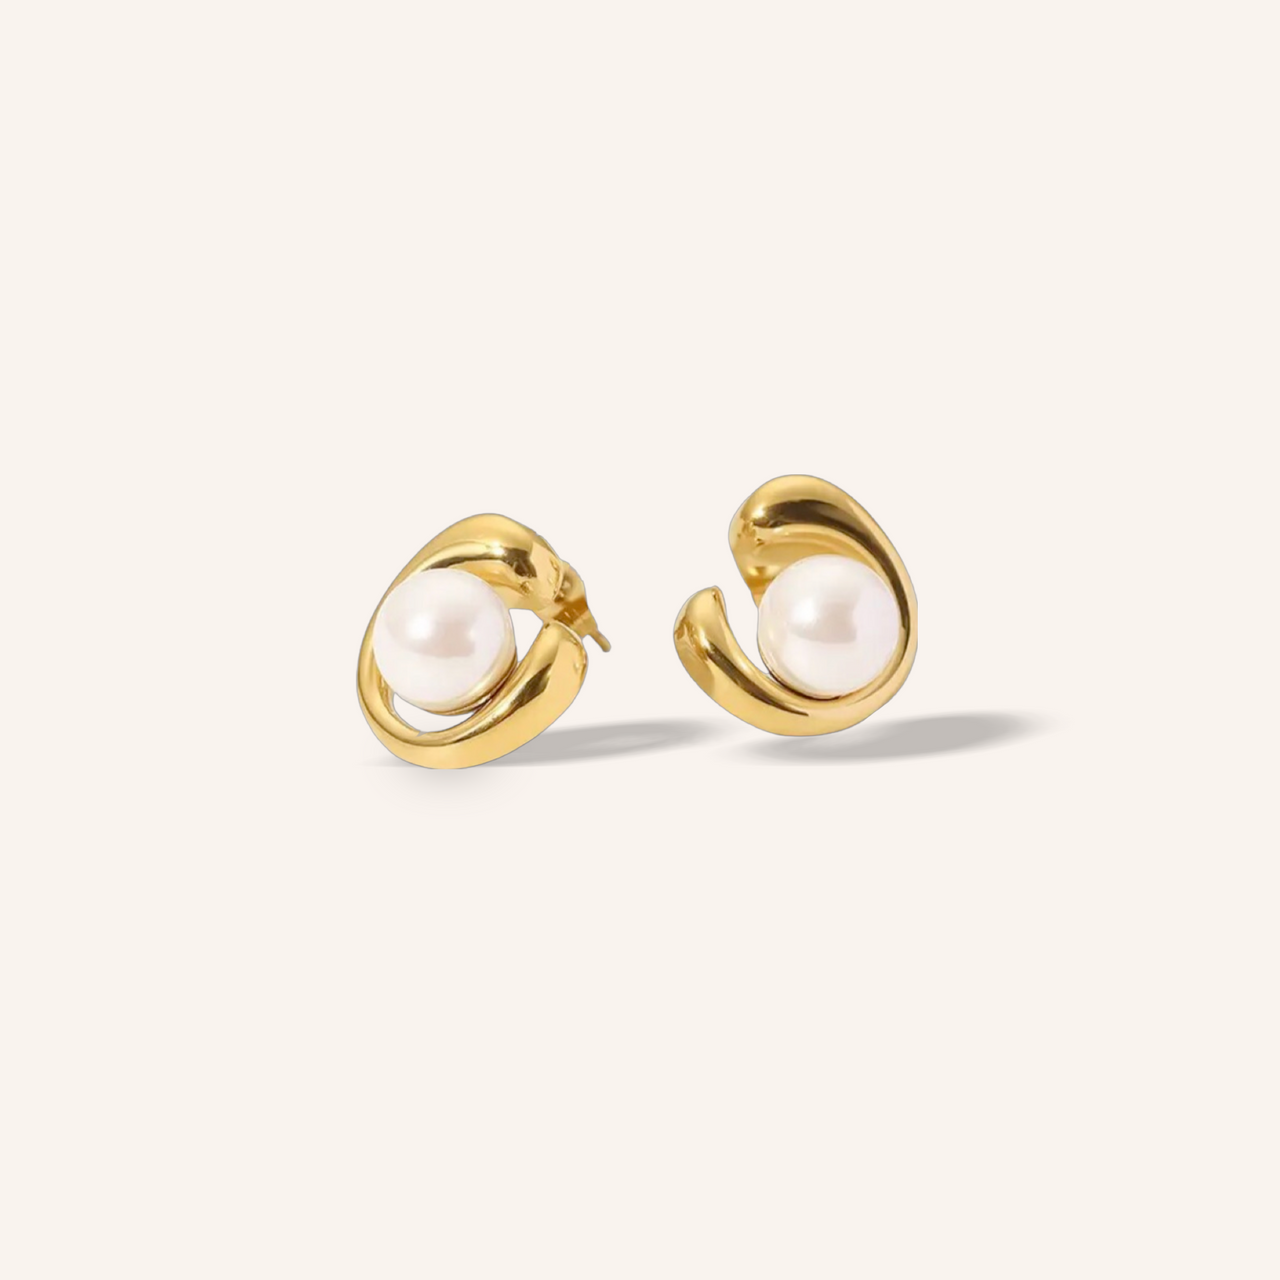 Olivia pearls earrings